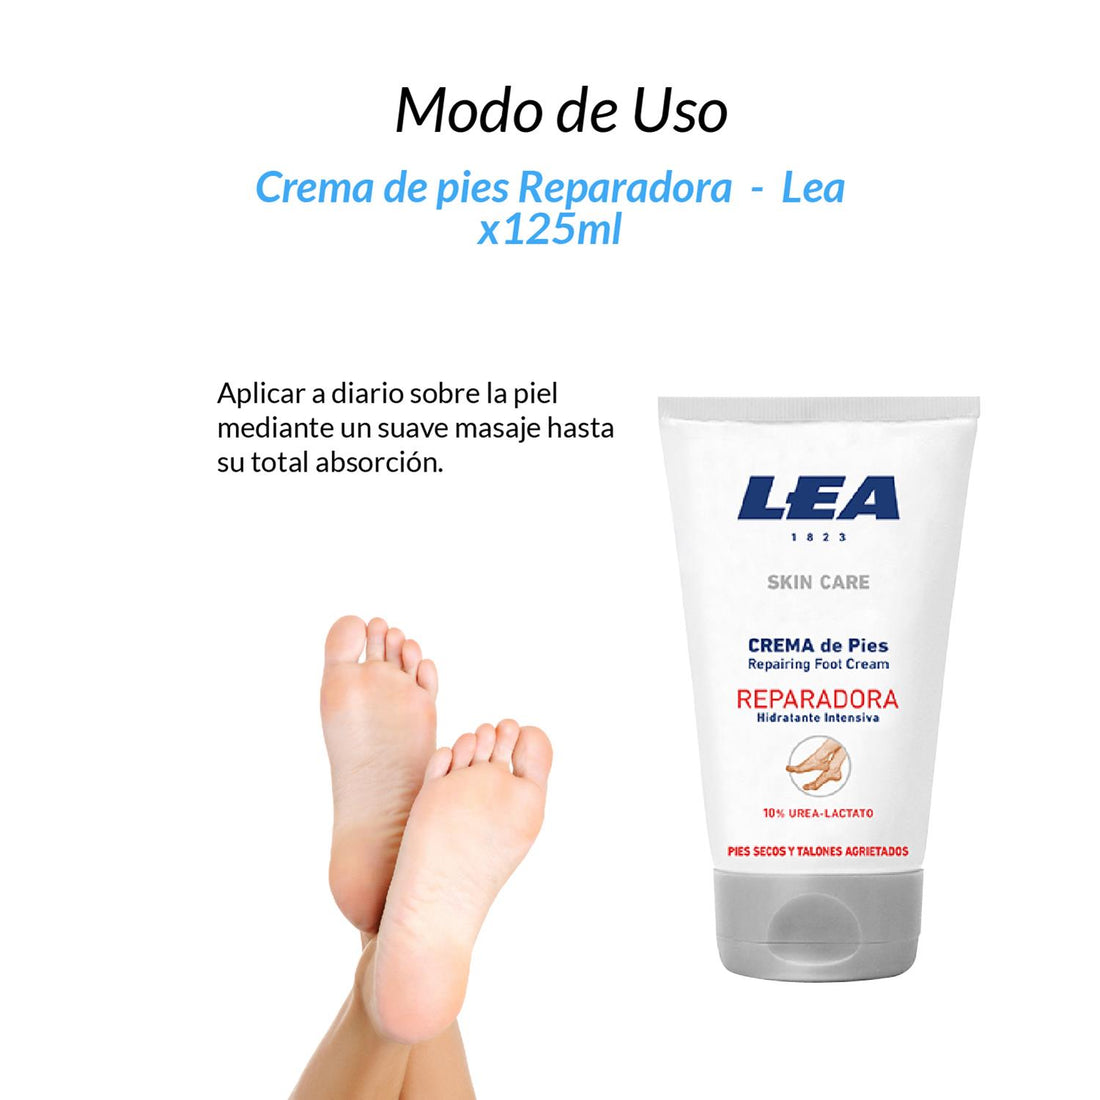 Crema de pies Reparadora - Lea 125ml